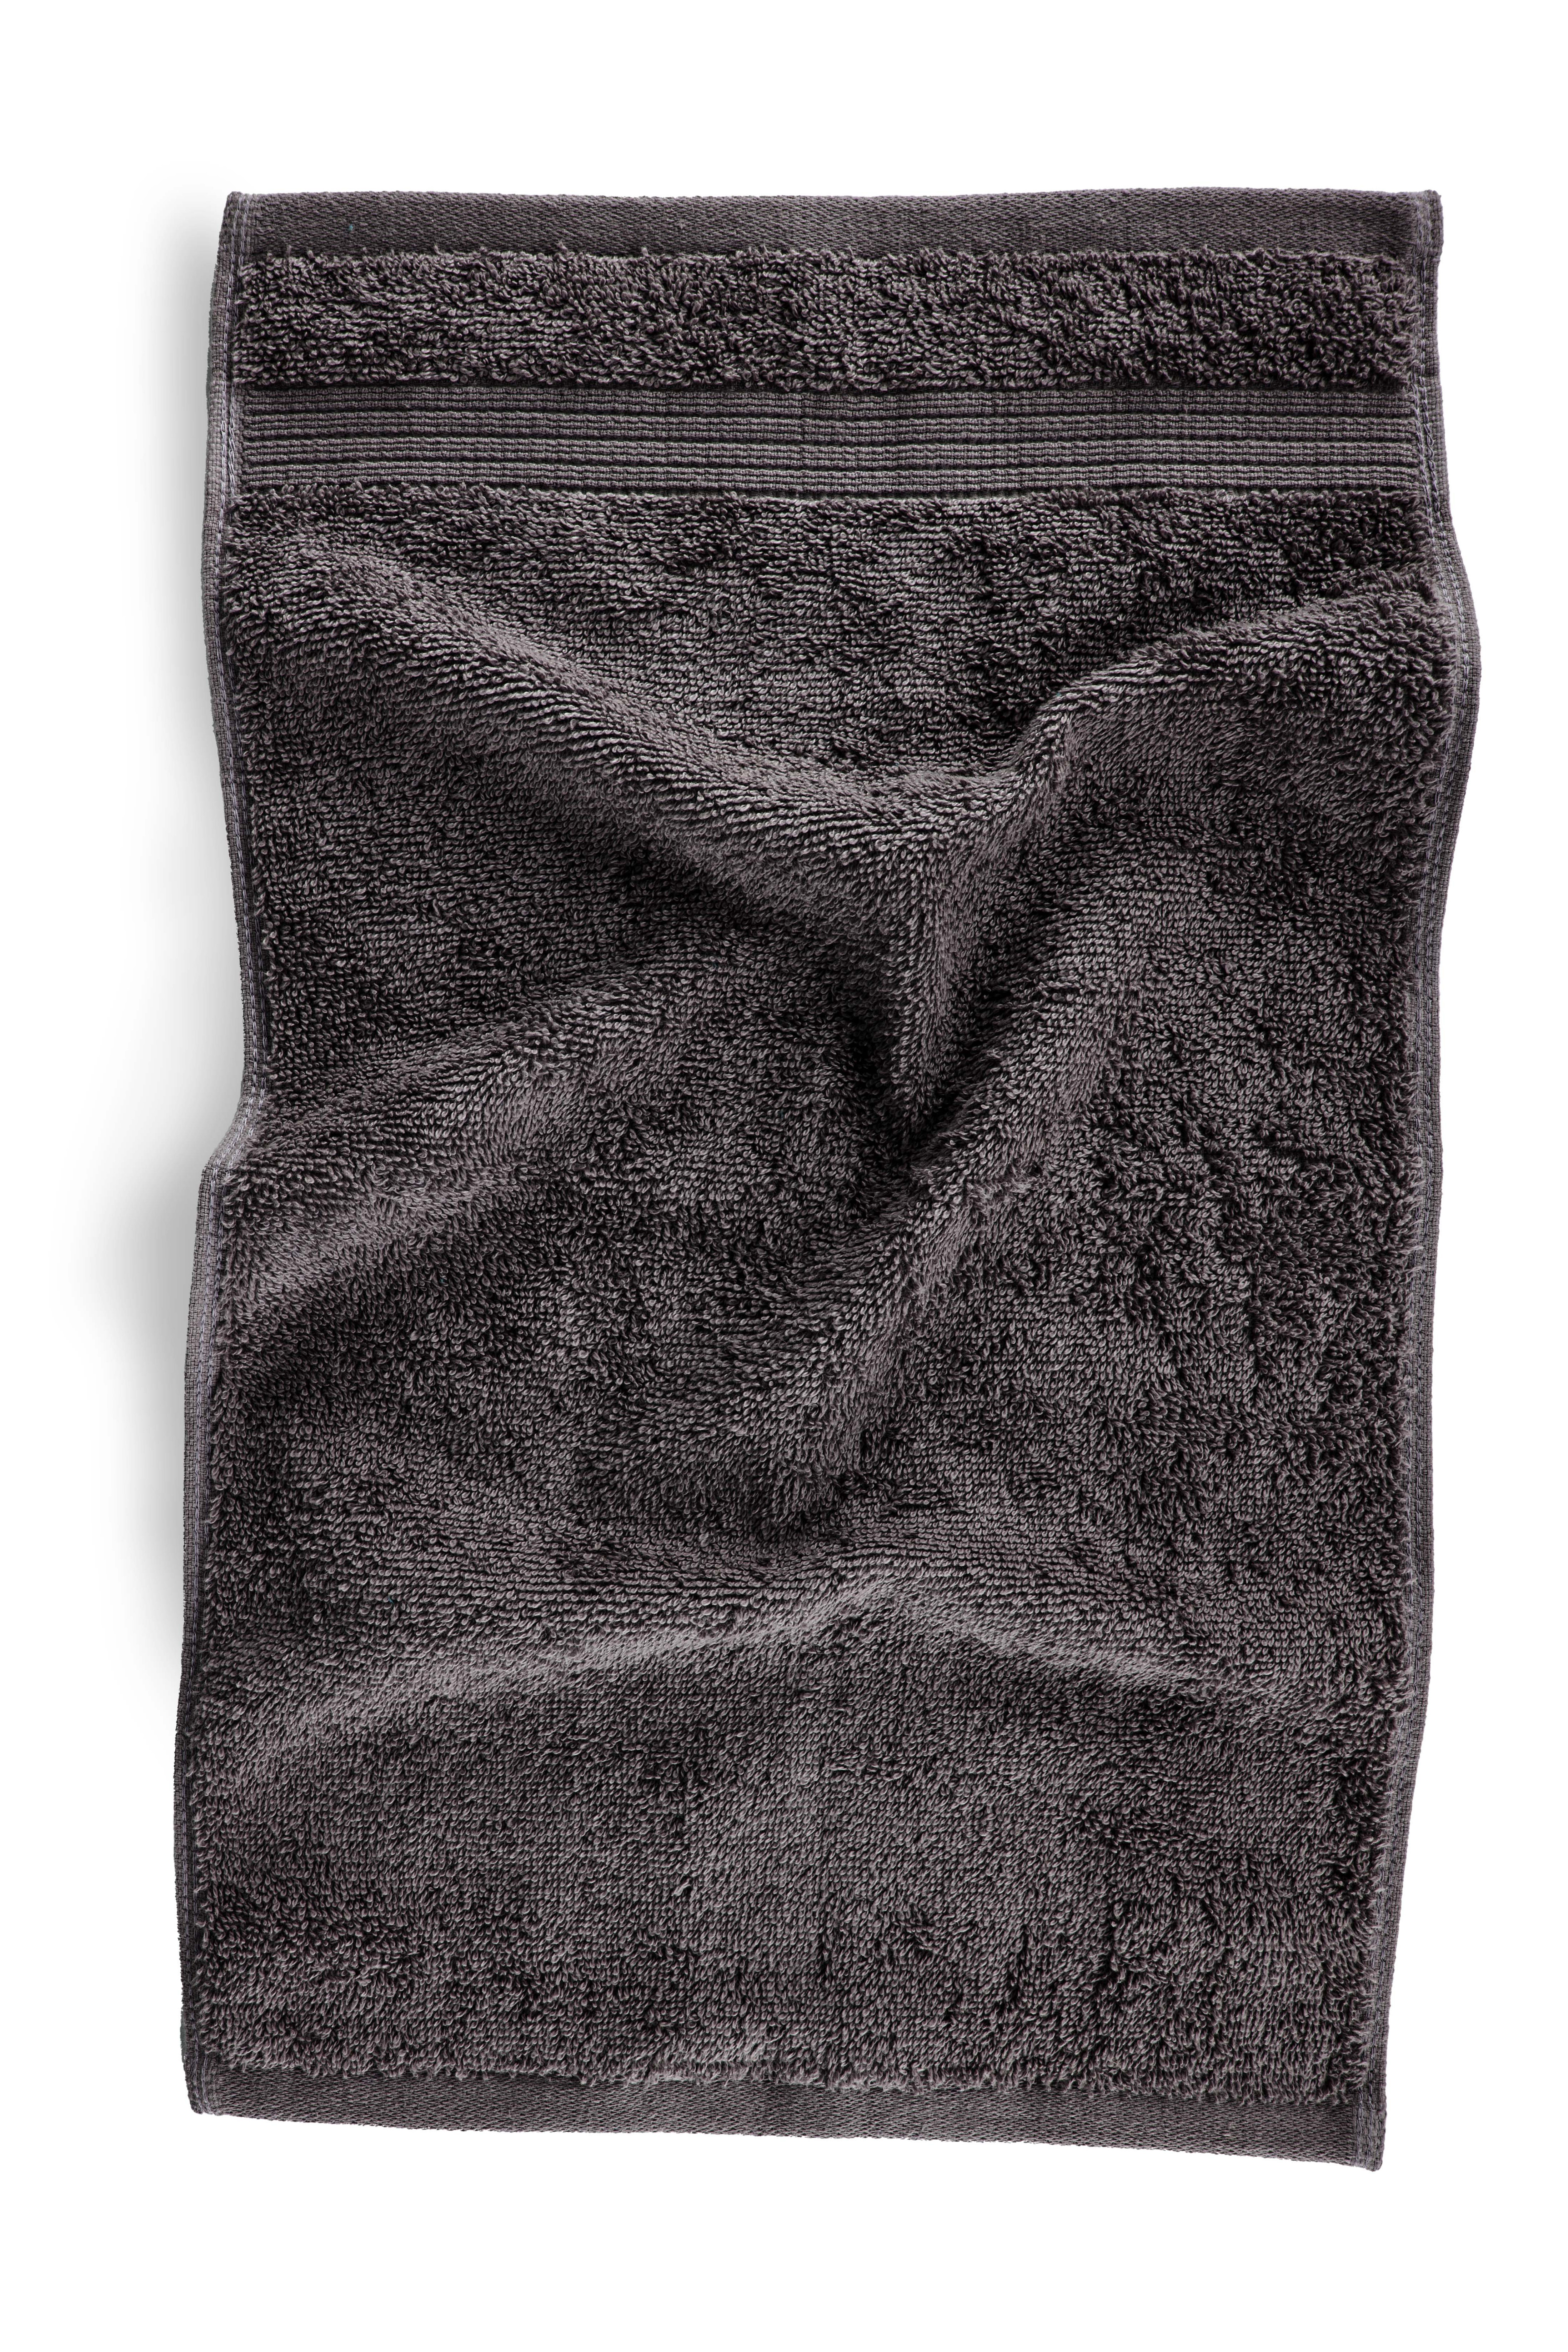 Guest towel EDEN 30x50cm, Tornado grey set/2